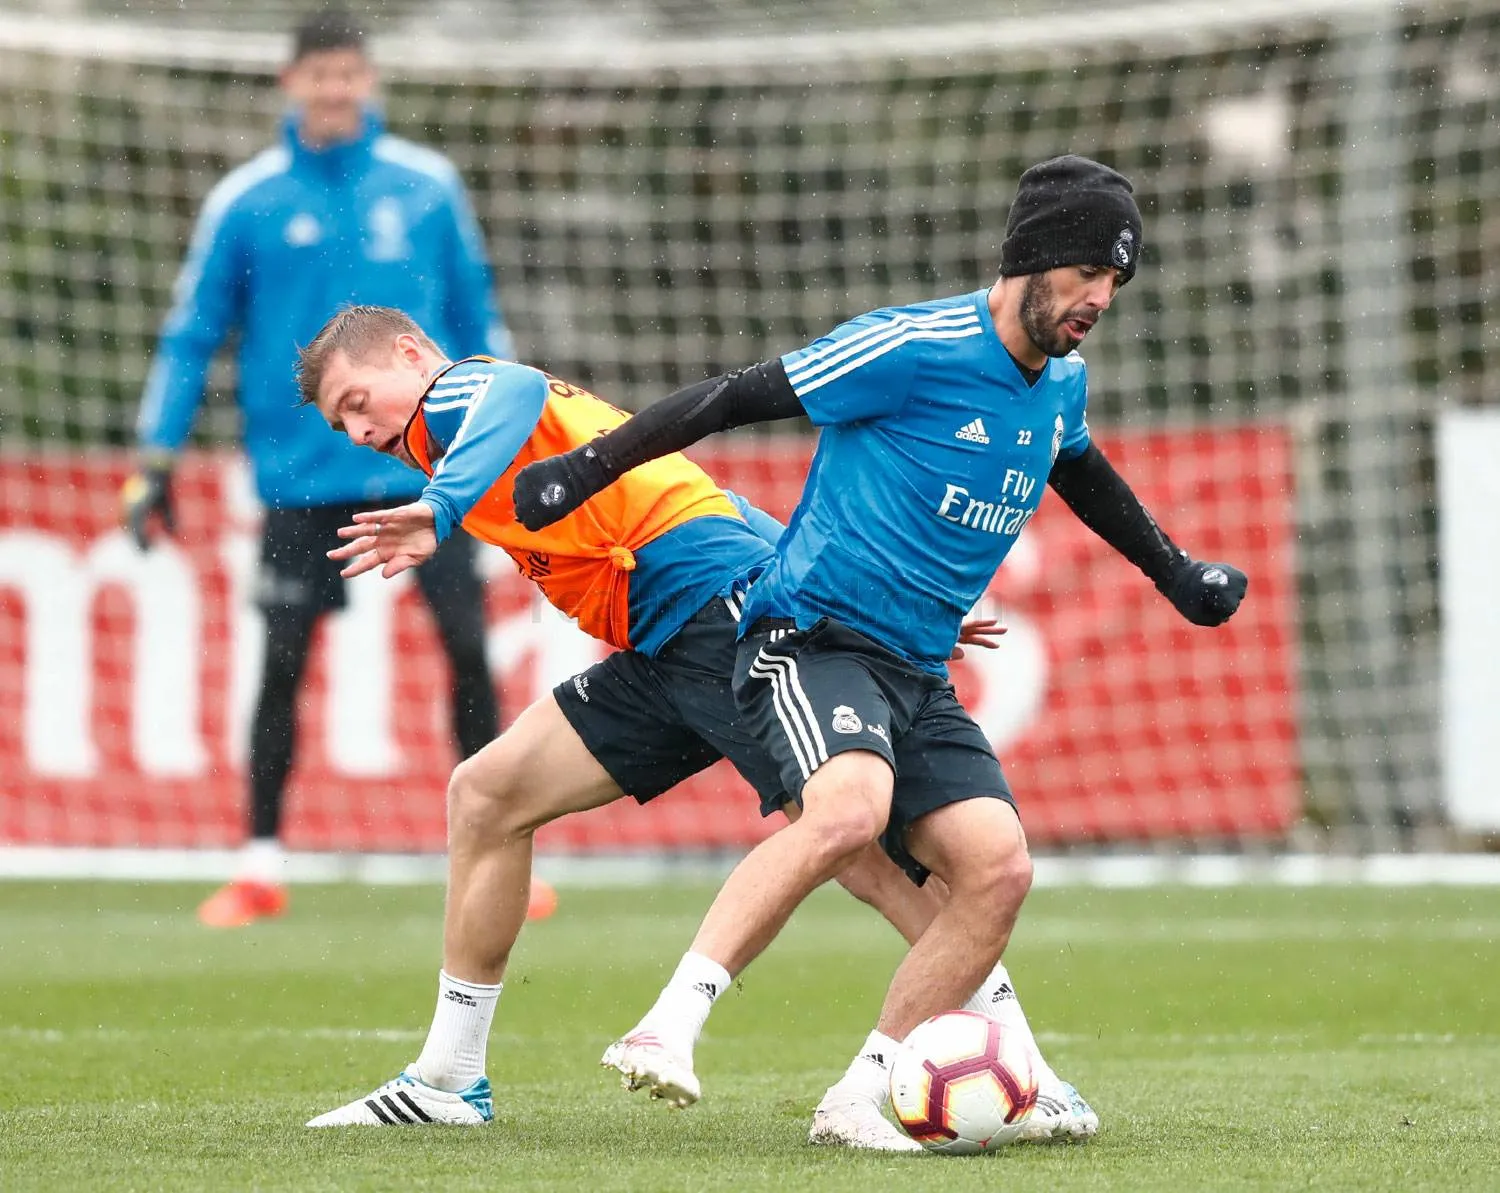 Tương lai bất định, Bale và Marcelo trở thành 